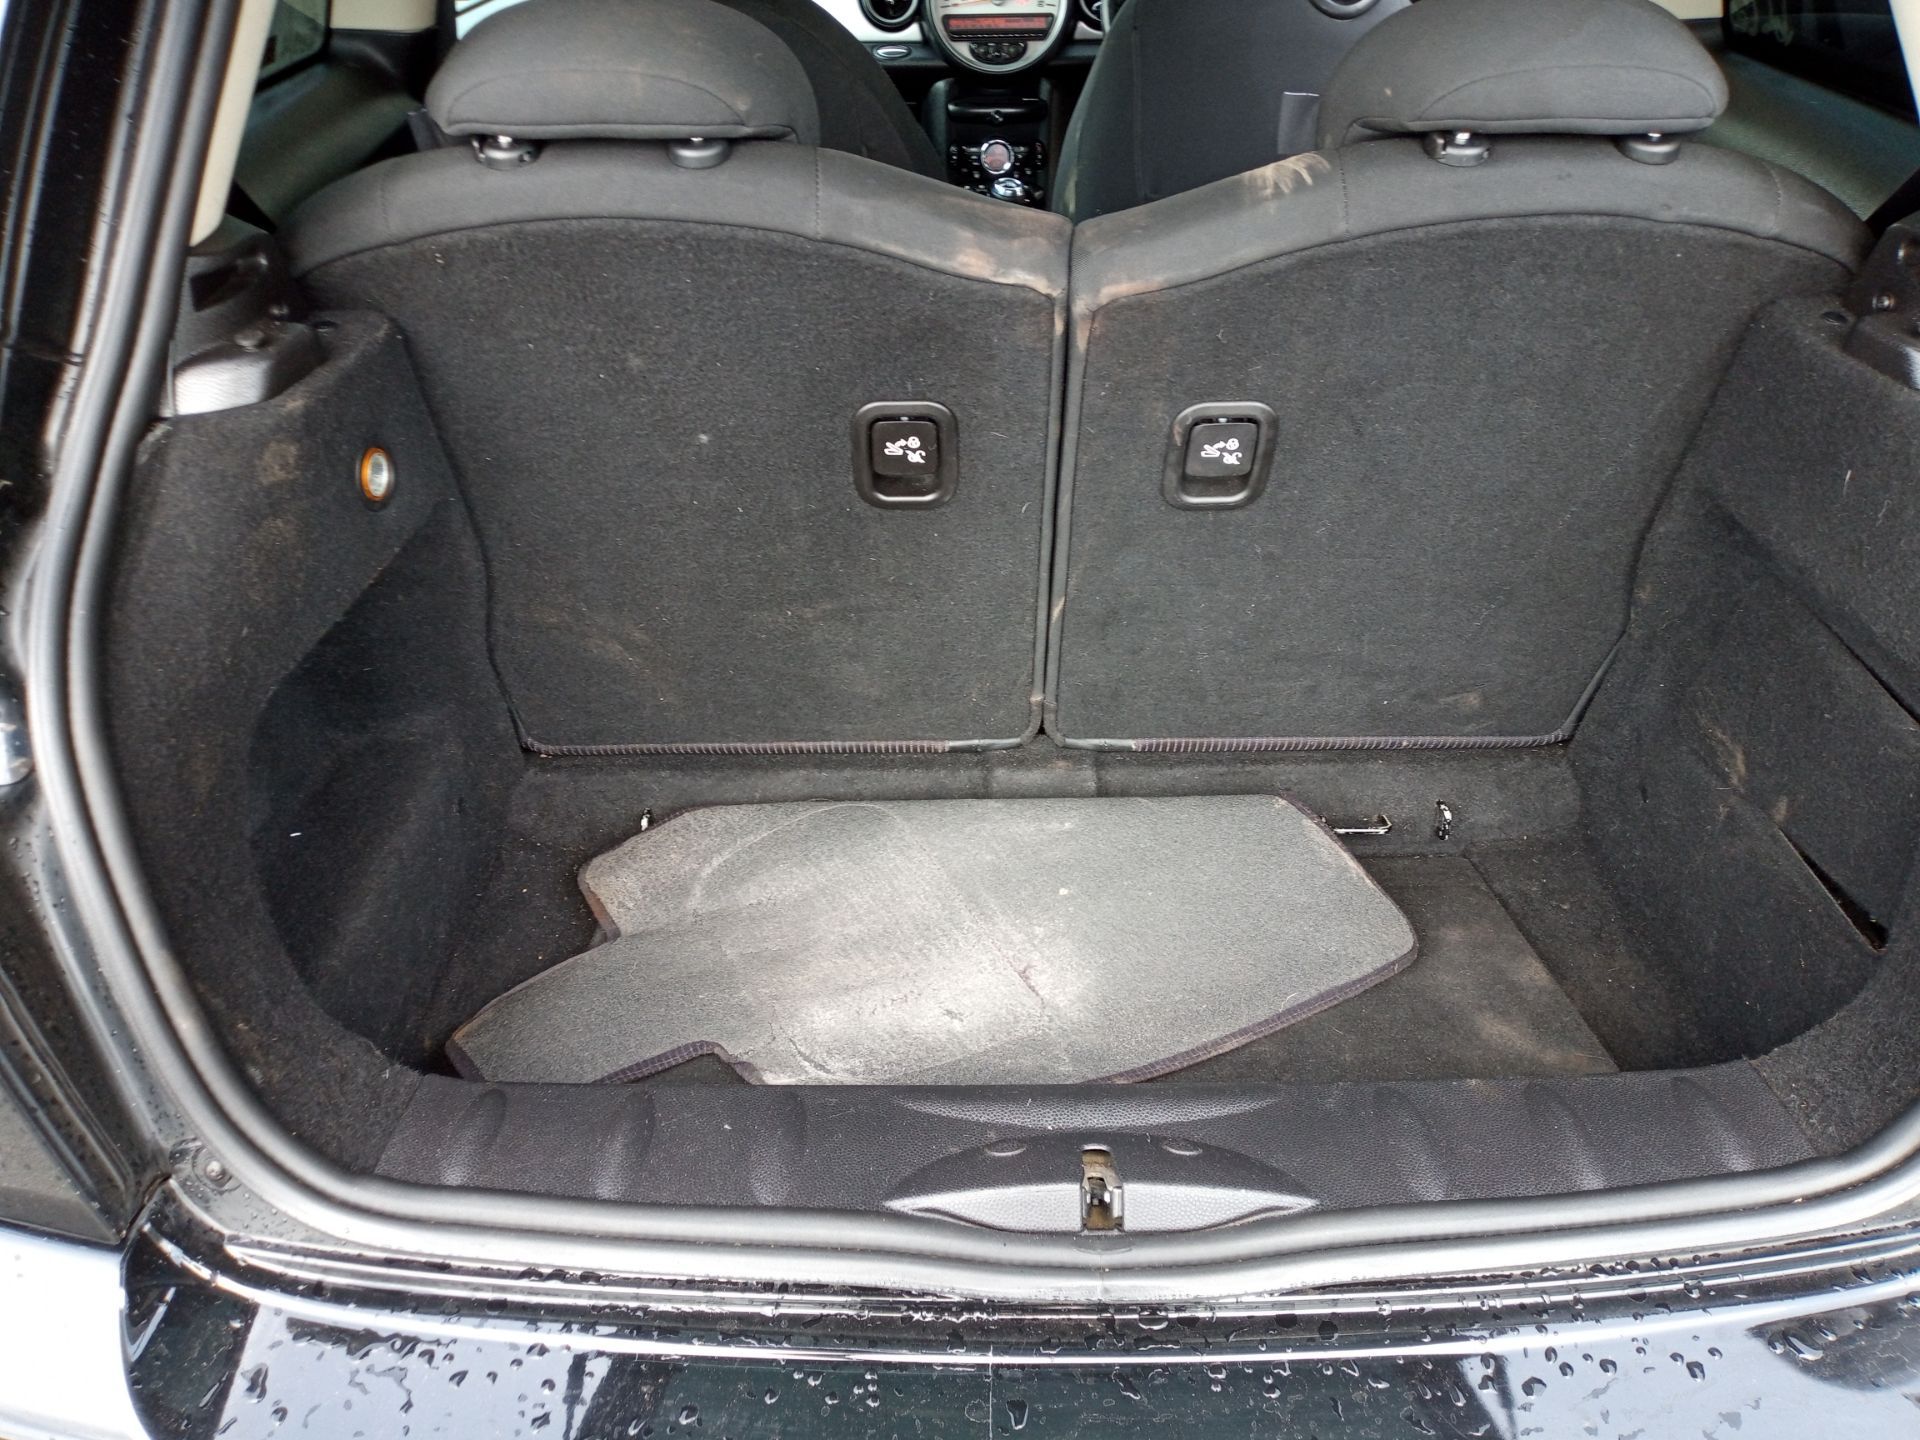 2011 Mini Cooper D DT 113 Diesel Hatchback, 154,997 MILES *NO VAT* - Image 9 of 17